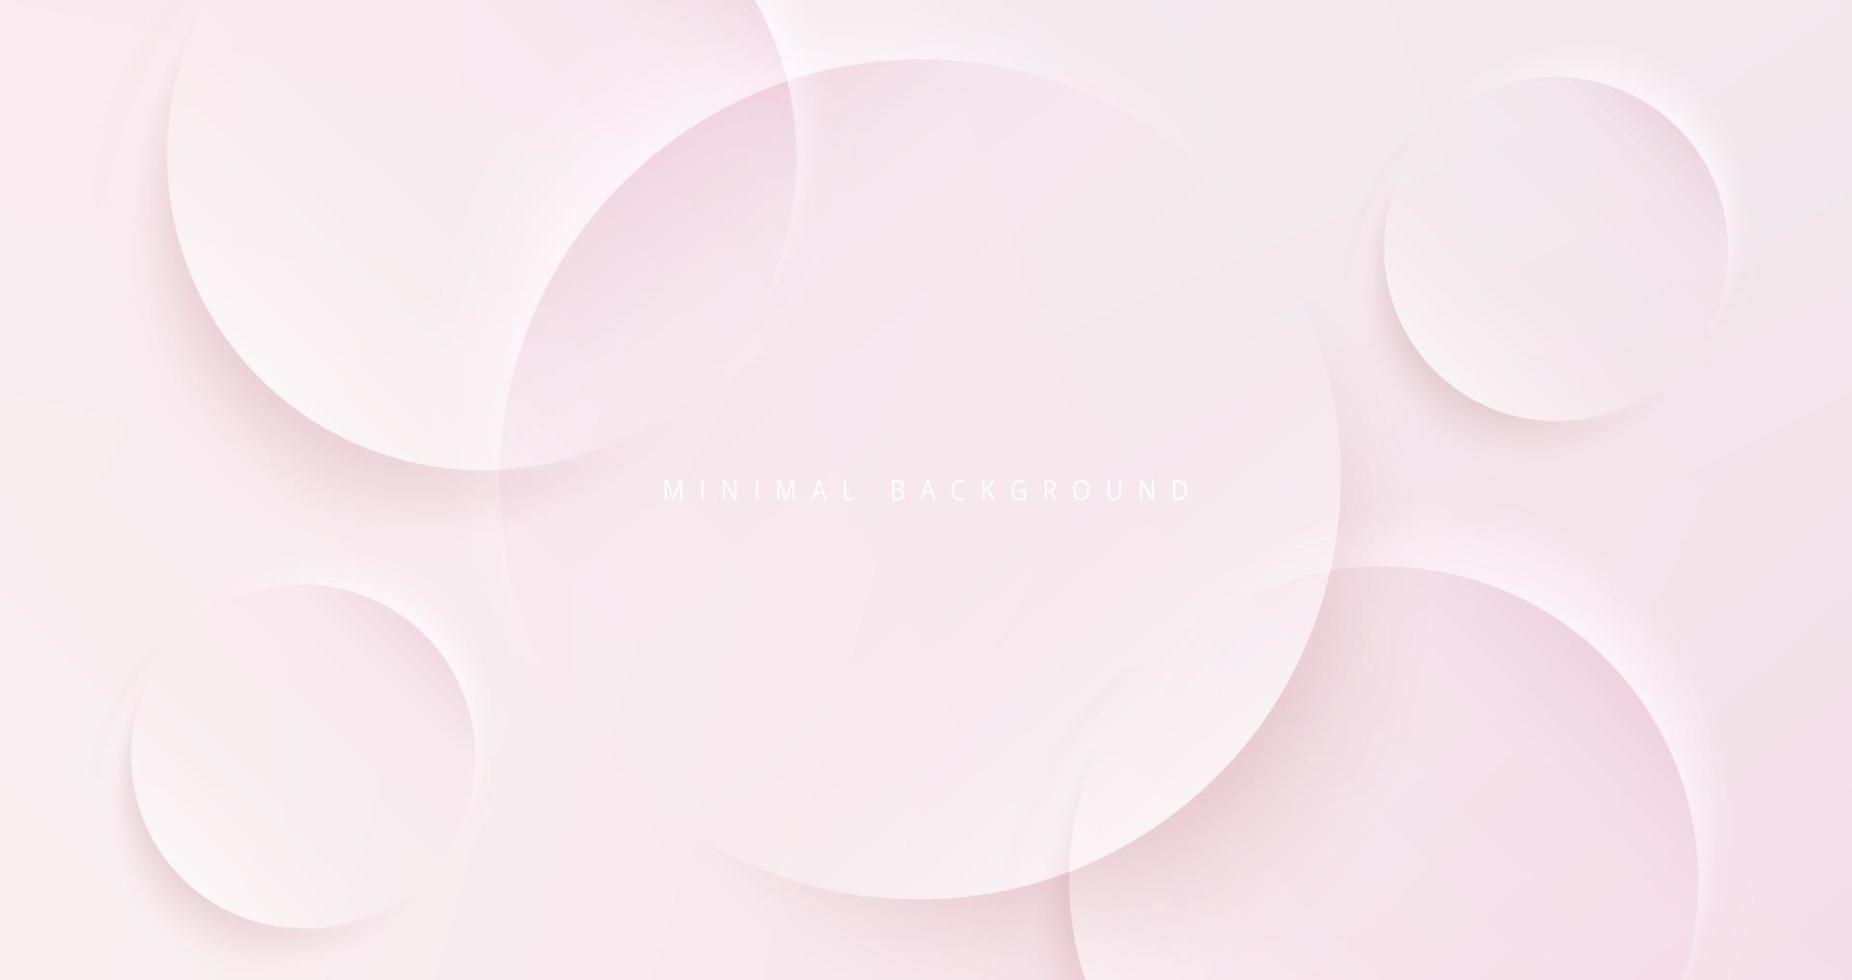 arrière-plan abstrait rose tendre, bannière moderne et propre, concept de page de destination aux couleurs pastel vecteur